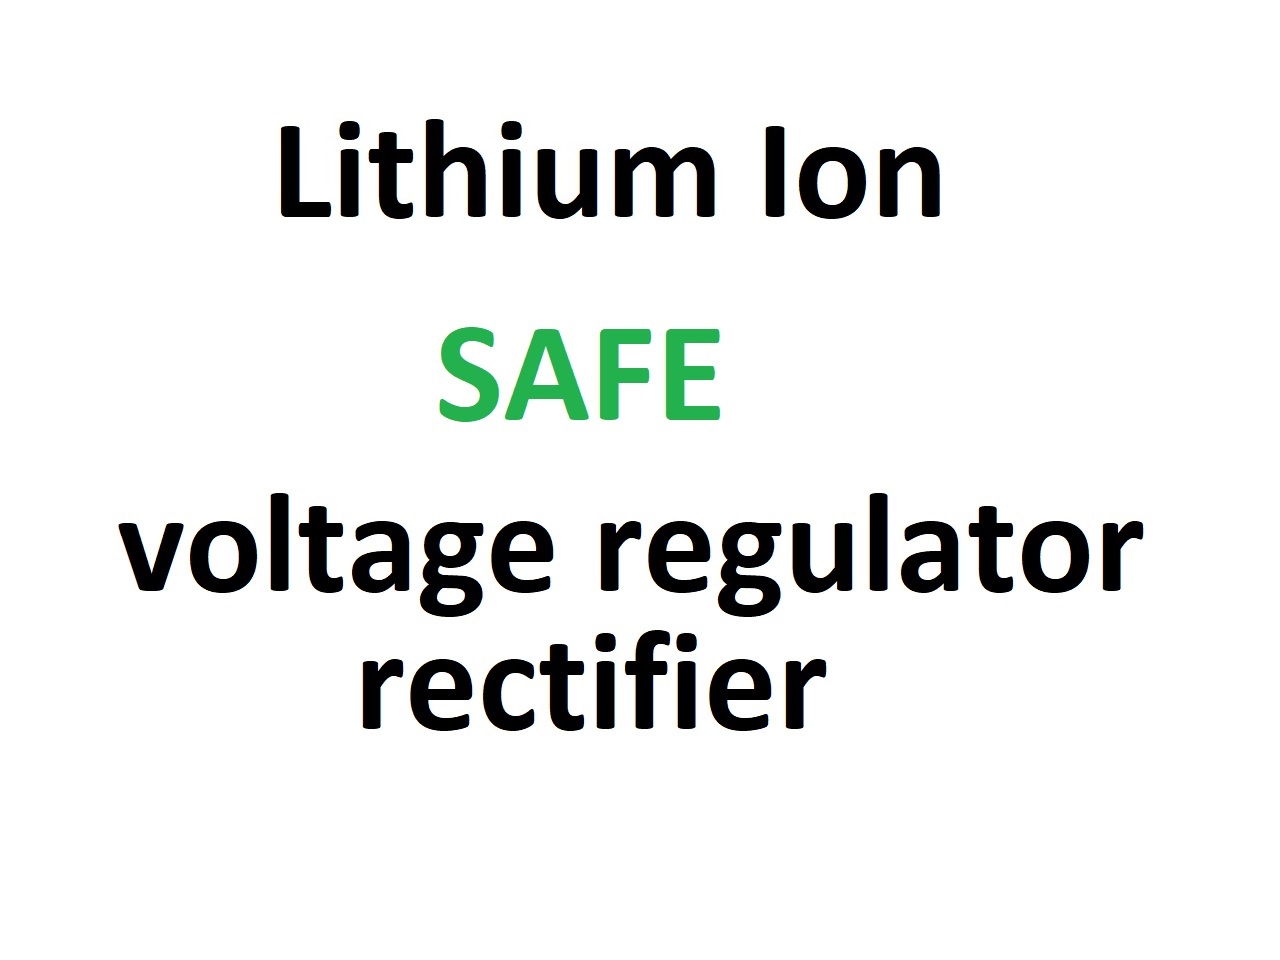 Raddrizzatore del regolatore di tensione, adatto per batterie agli ioni di litio - Clicca l'immagine per chiudere